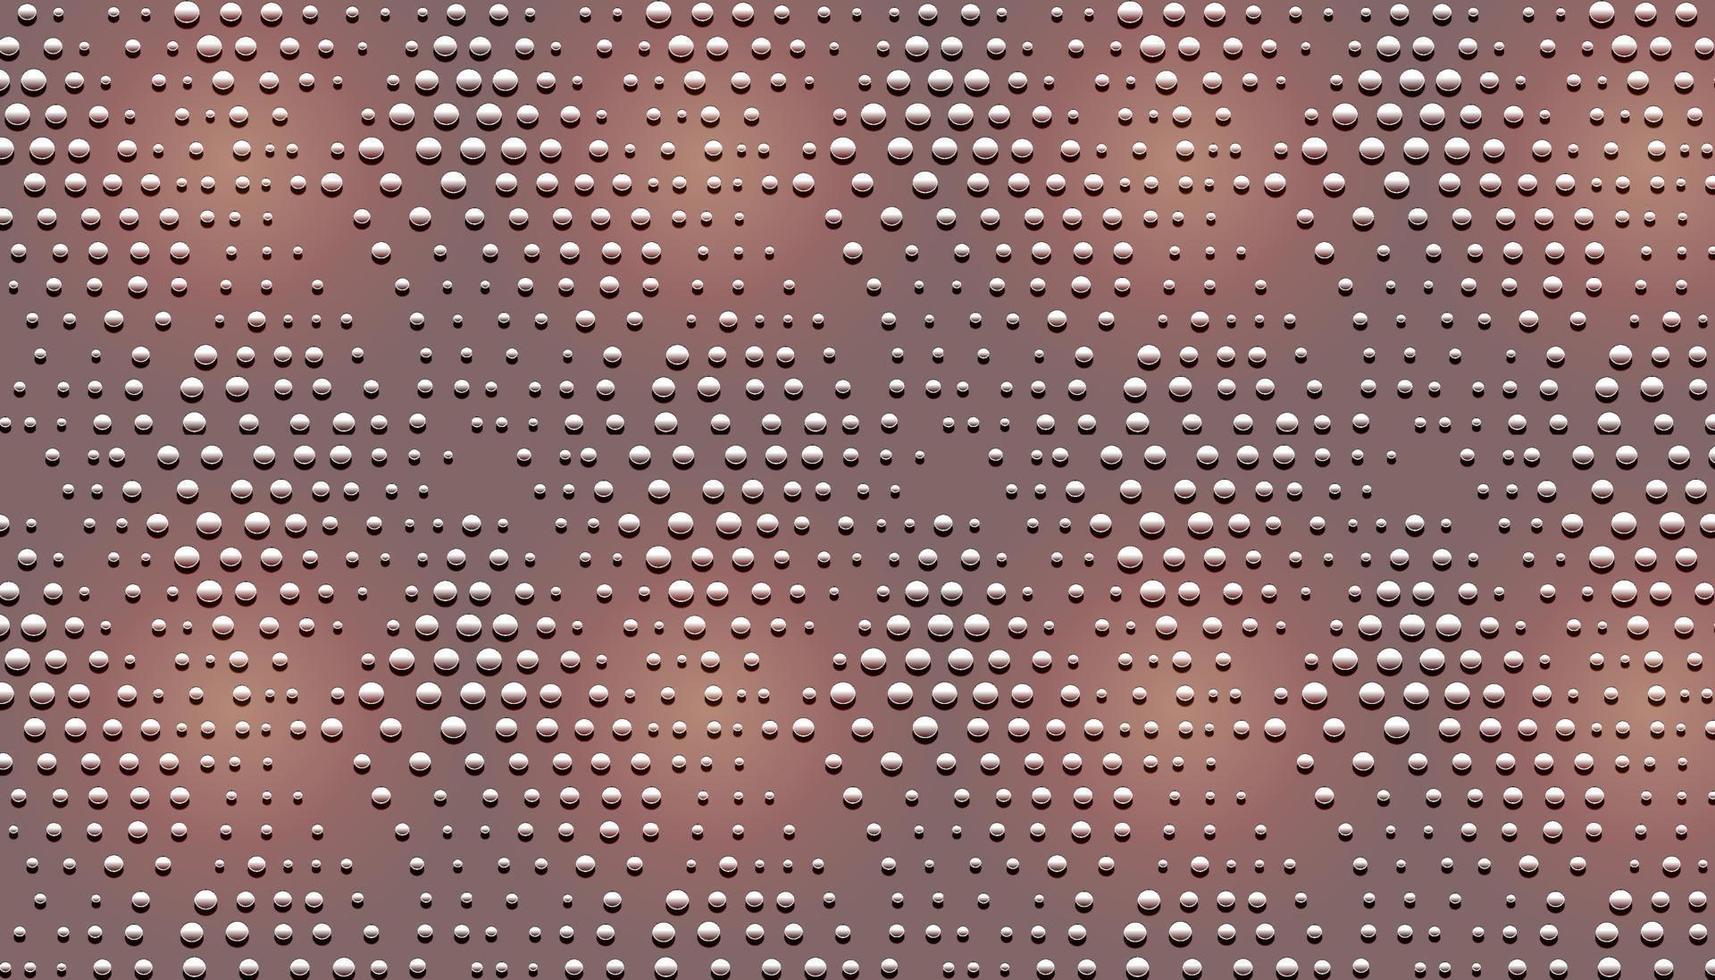 texture di sfondo in metallo con punti dossi. vettore